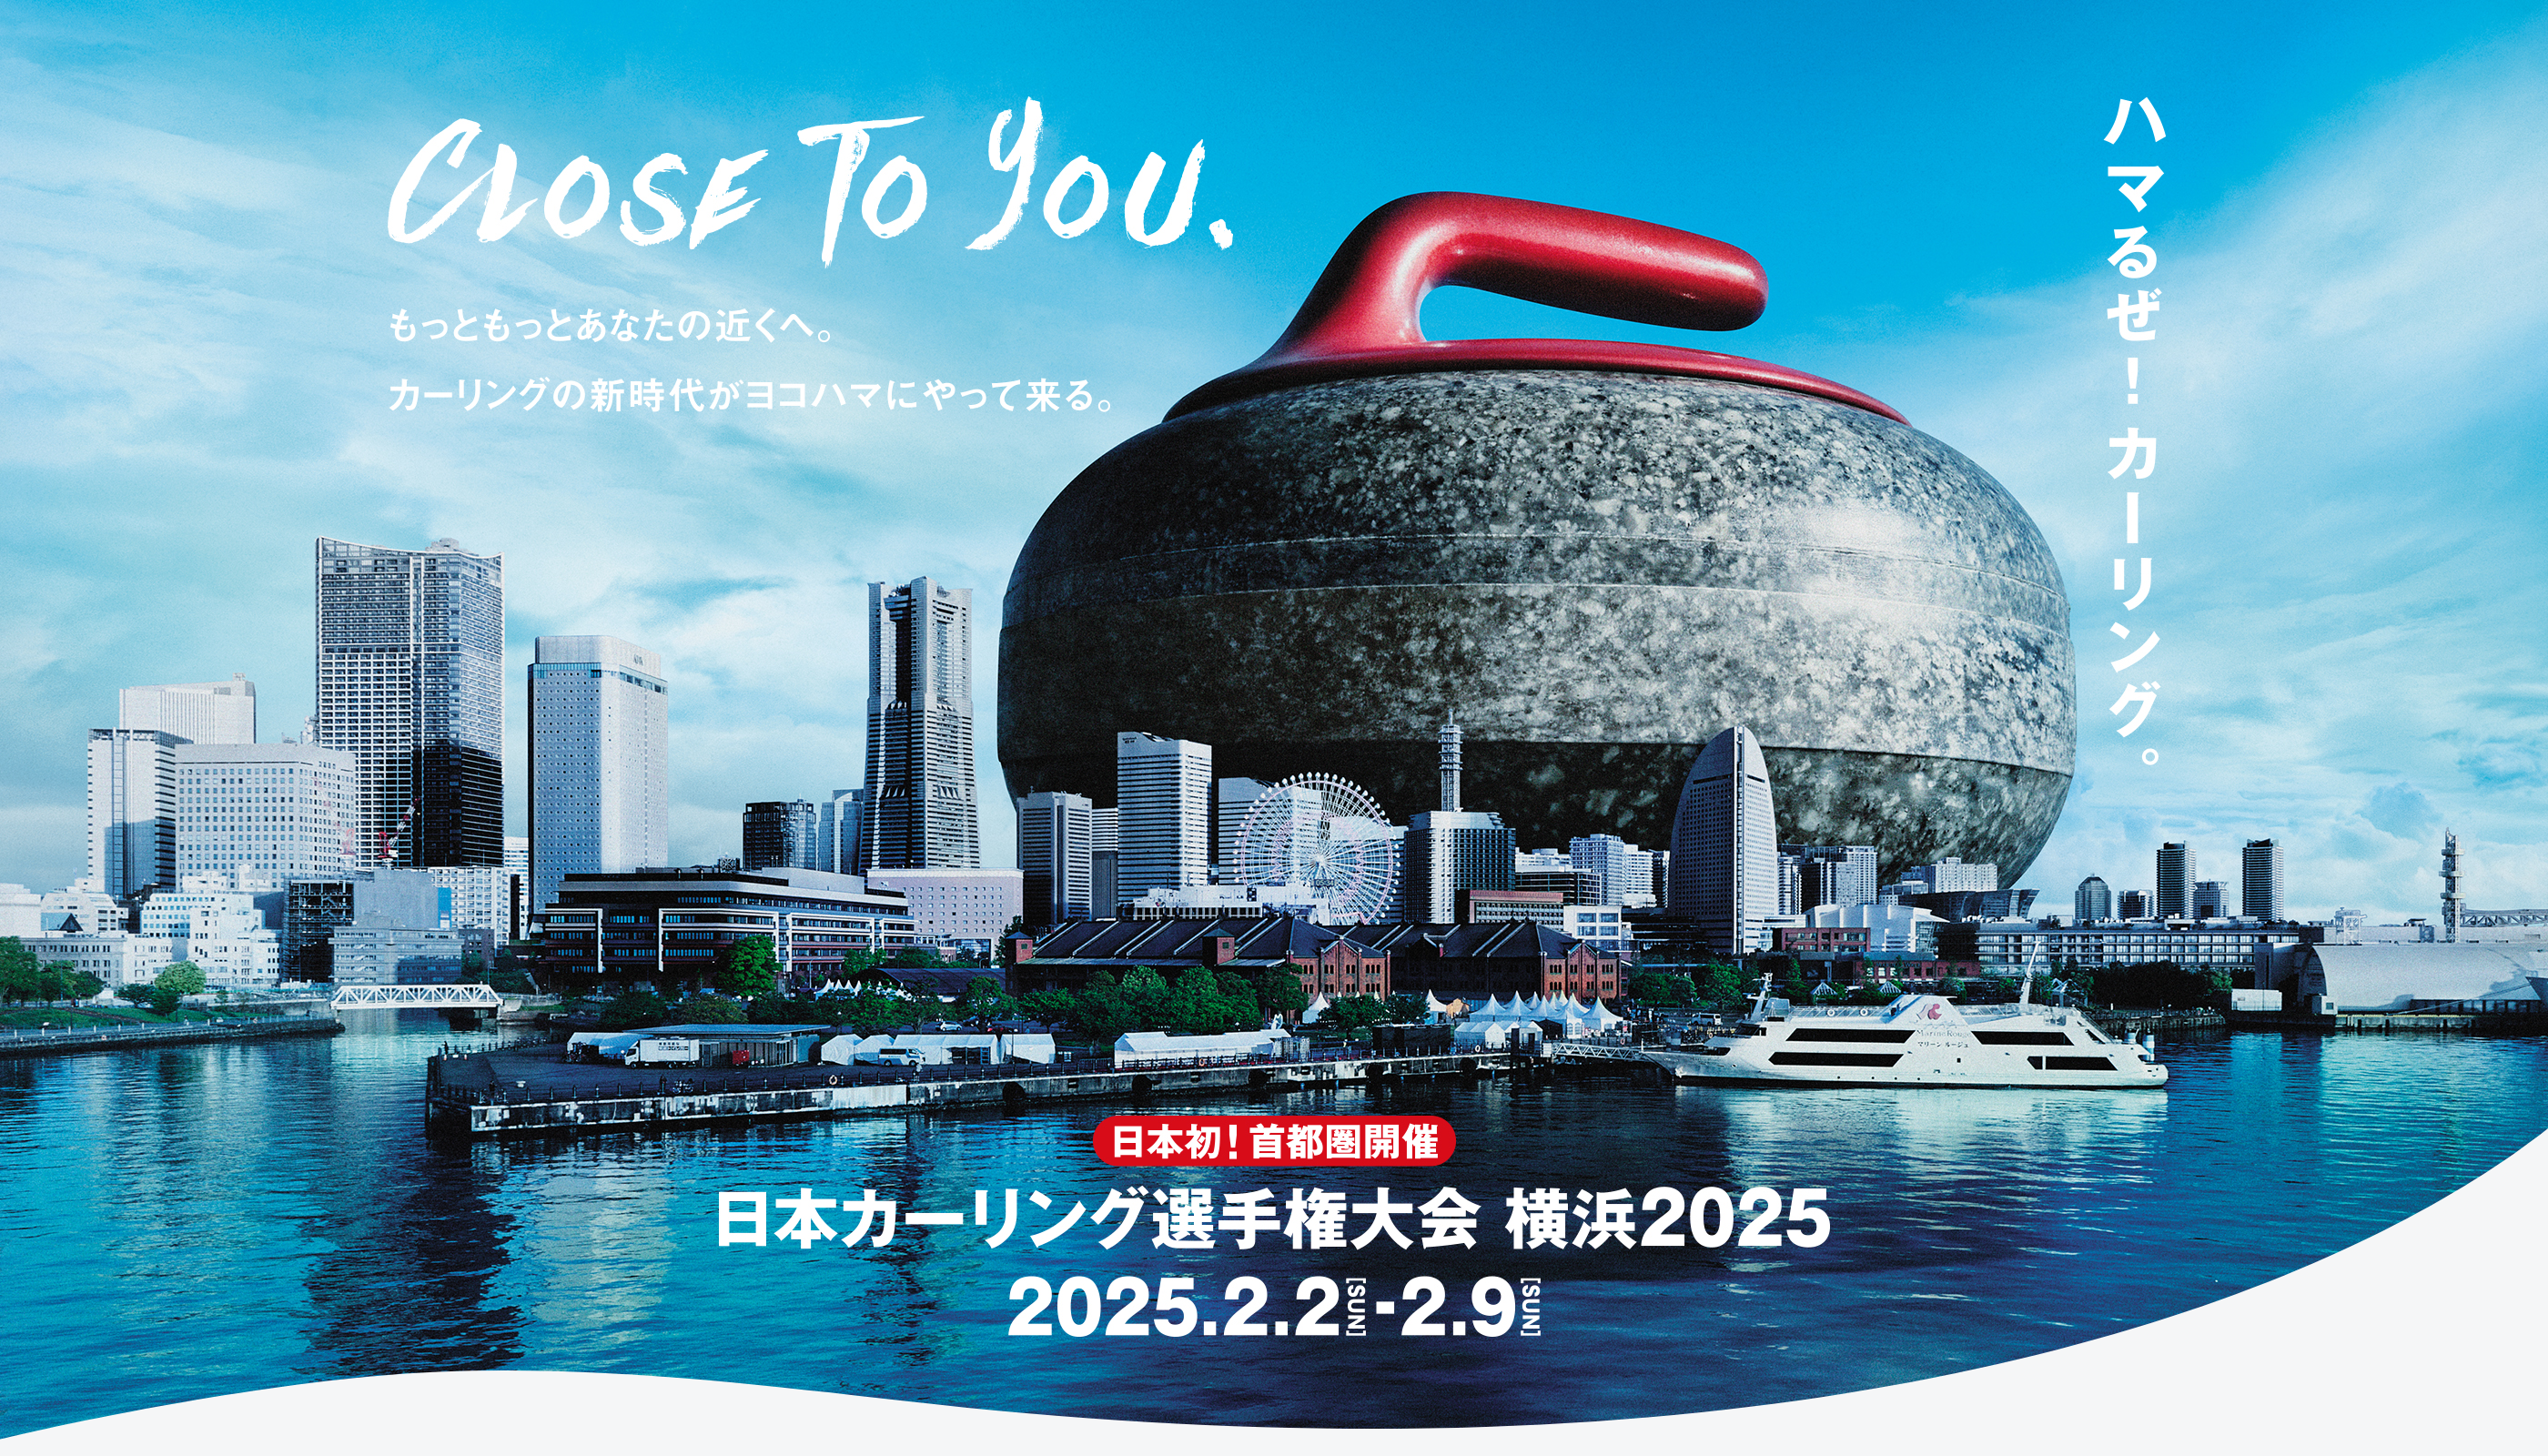 CLOSE To You.もっともっとあなたの近くへ。カーリングの新時代がヨコハマにやって来る。日本初！首都圏開催 日本カーリング選手権大会 横浜2025 2025.2.2 SUN-2.9 SUN